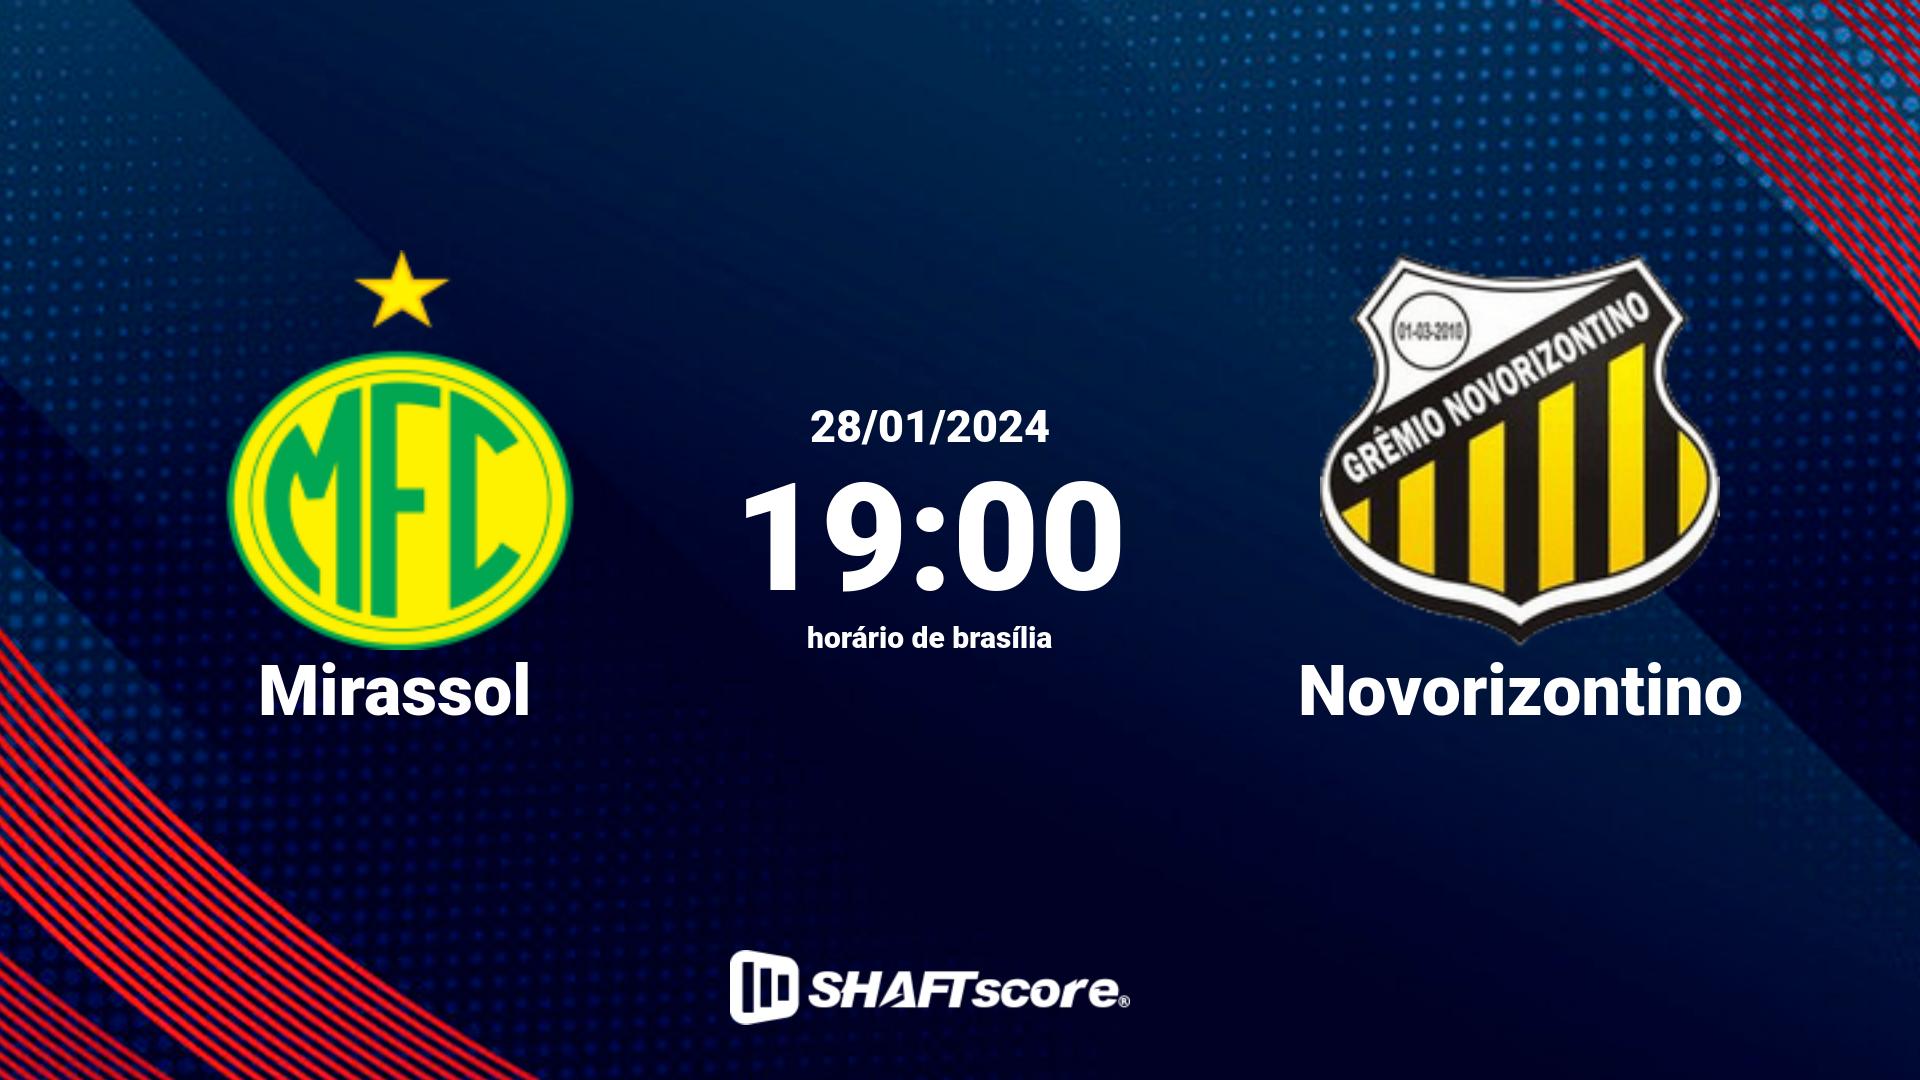 Estatísticas do jogo Mirassol vs Novorizontino 28.01 19:00